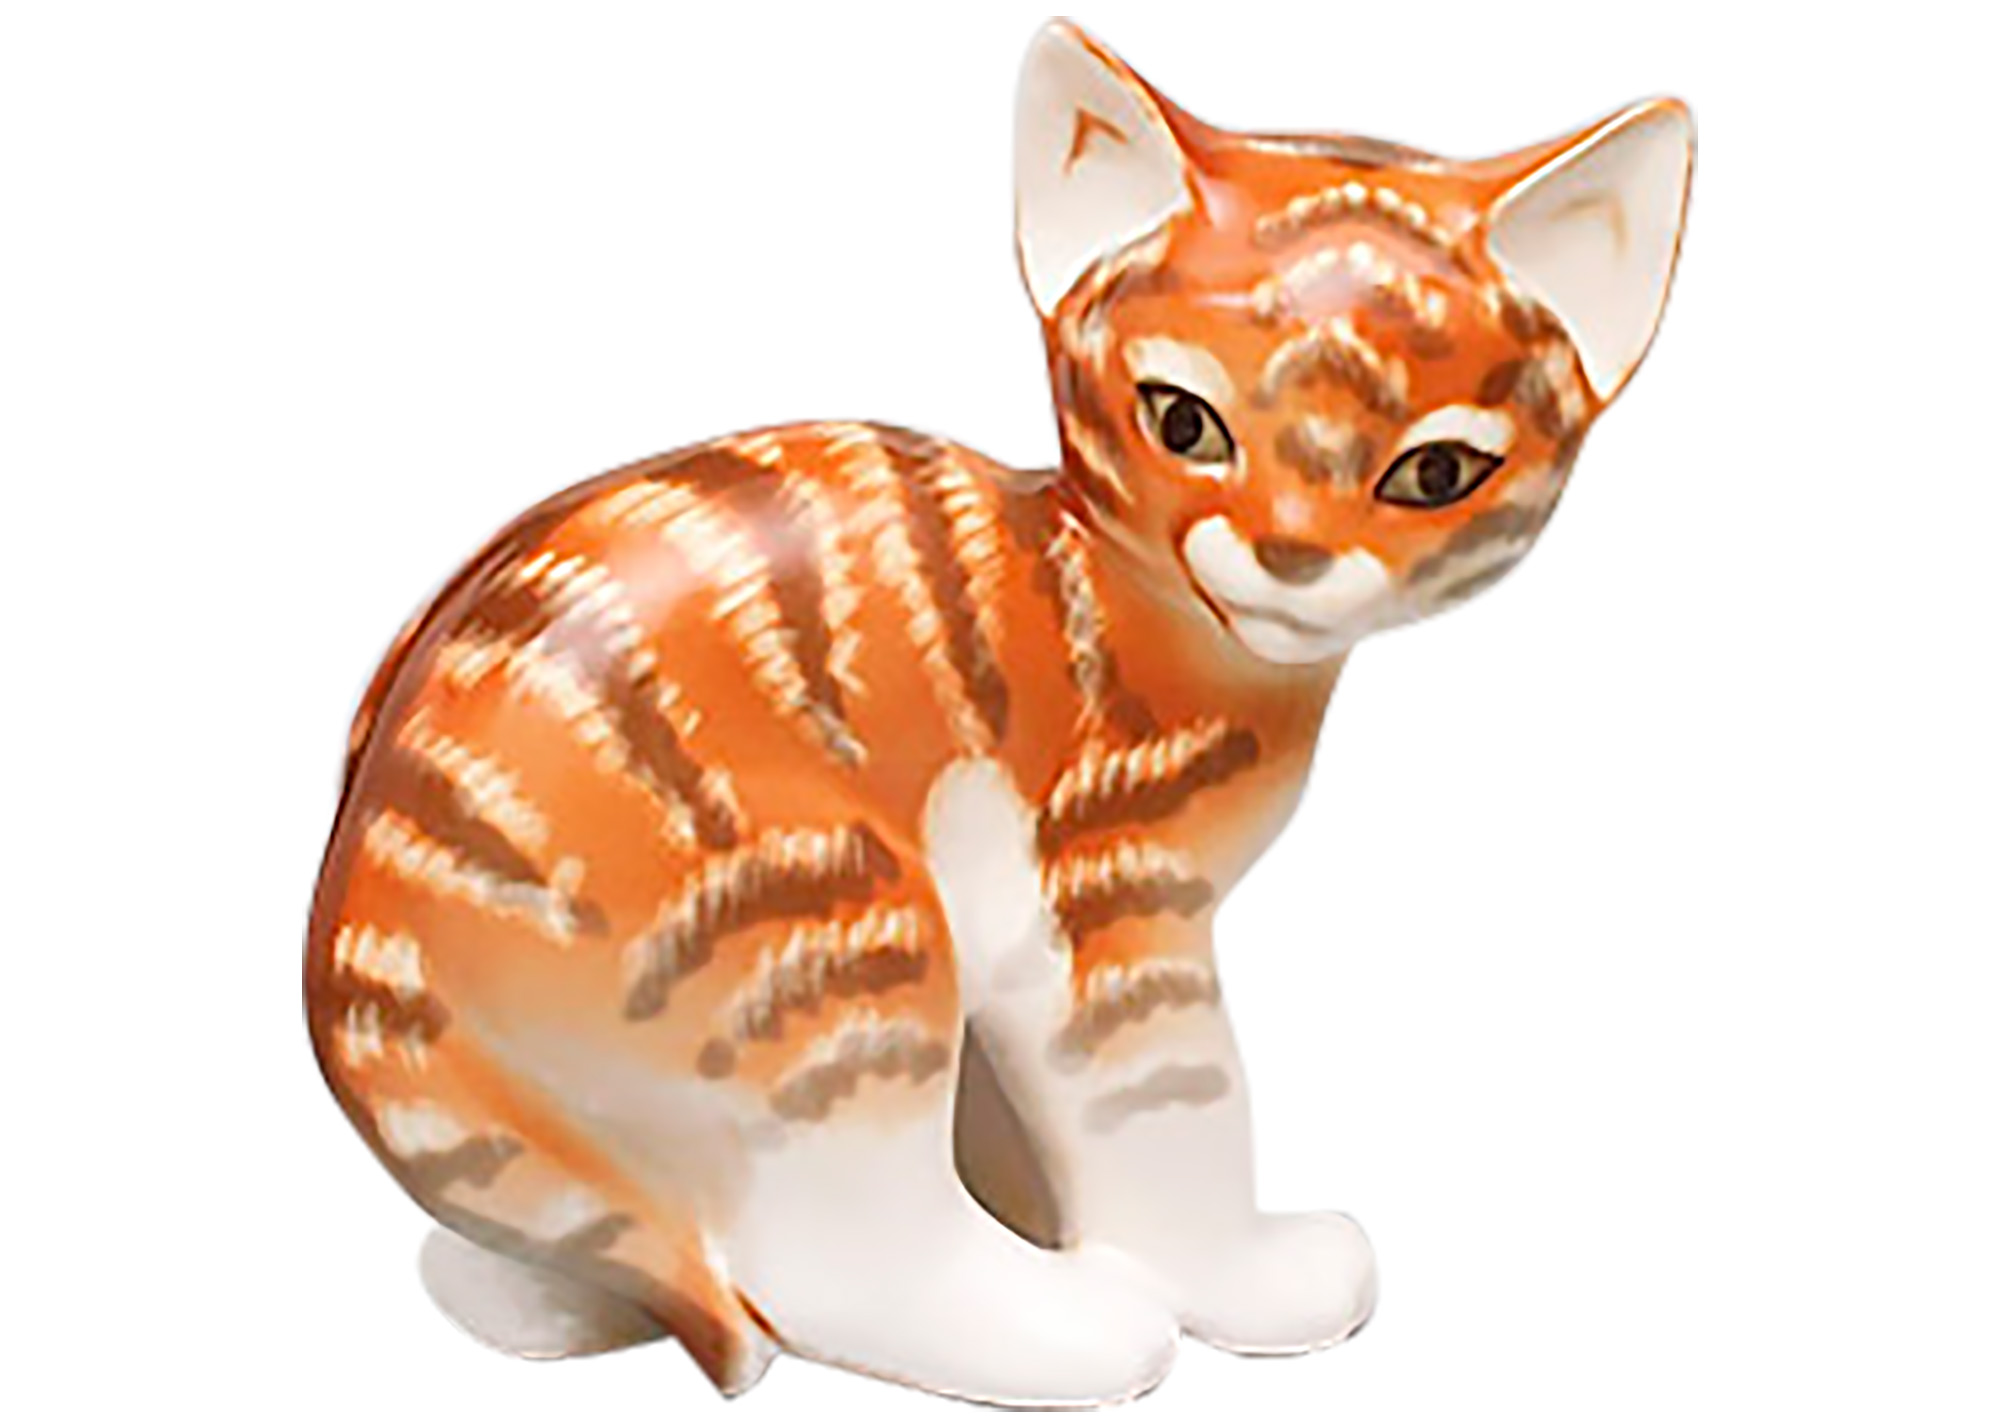 Buy Фарфоровая статуэтка "Кошка рыжая" at GoldenCockerel.com